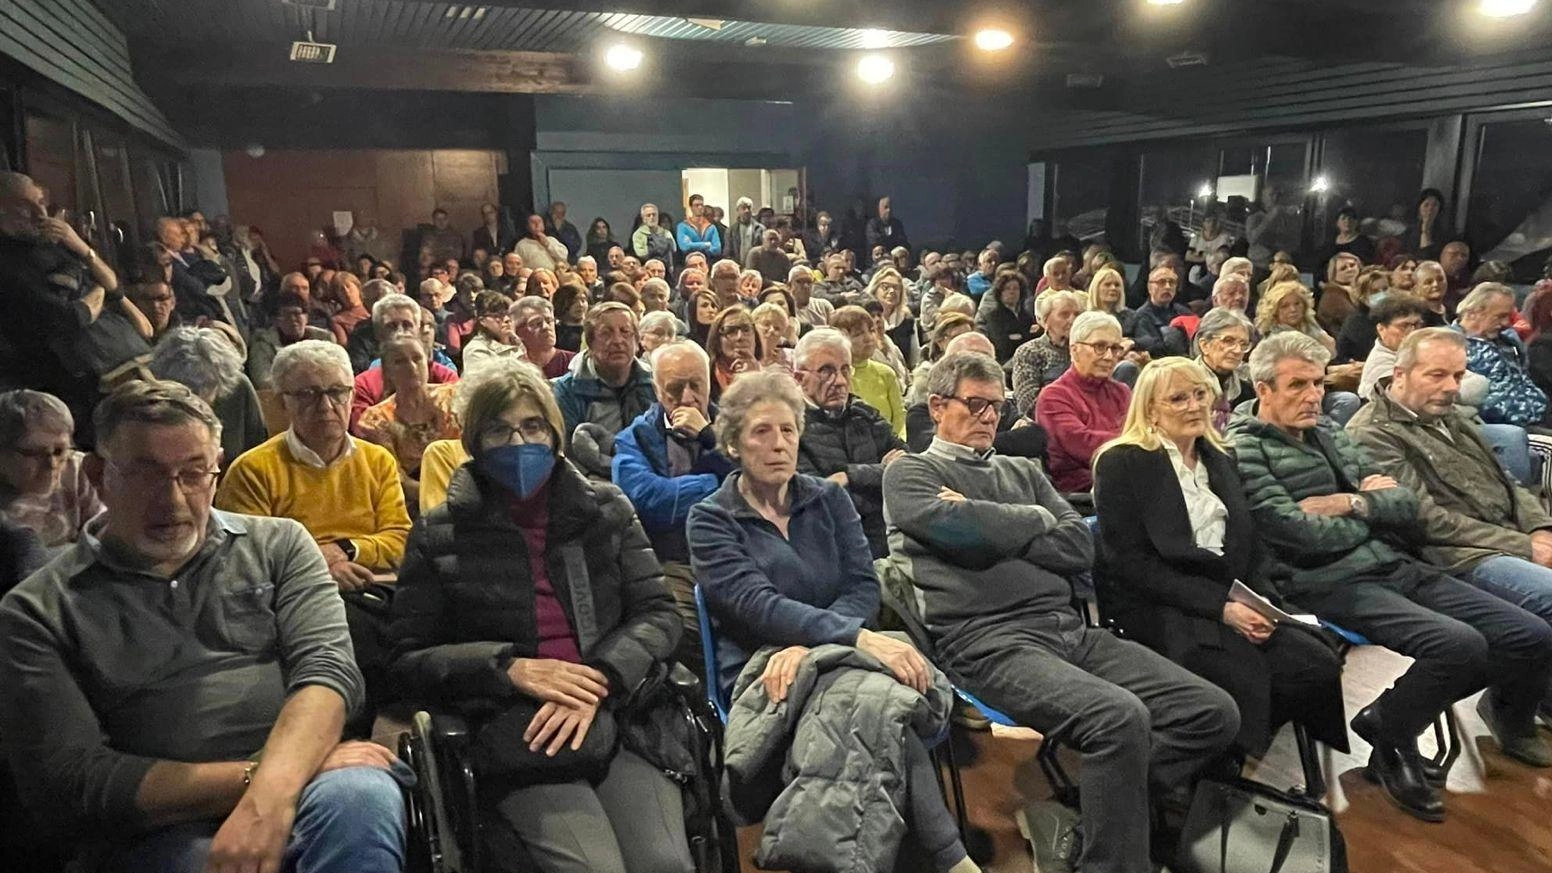 Il movimento rinascita Morelli Autonomo organizza una manifestazione a Sondalo e dialoga con i vertici di Asst Valtellina e Alto Lario. Prevedono mobilitazioni future e criticano la gestione passata, annunciando azioni fino al 2025.